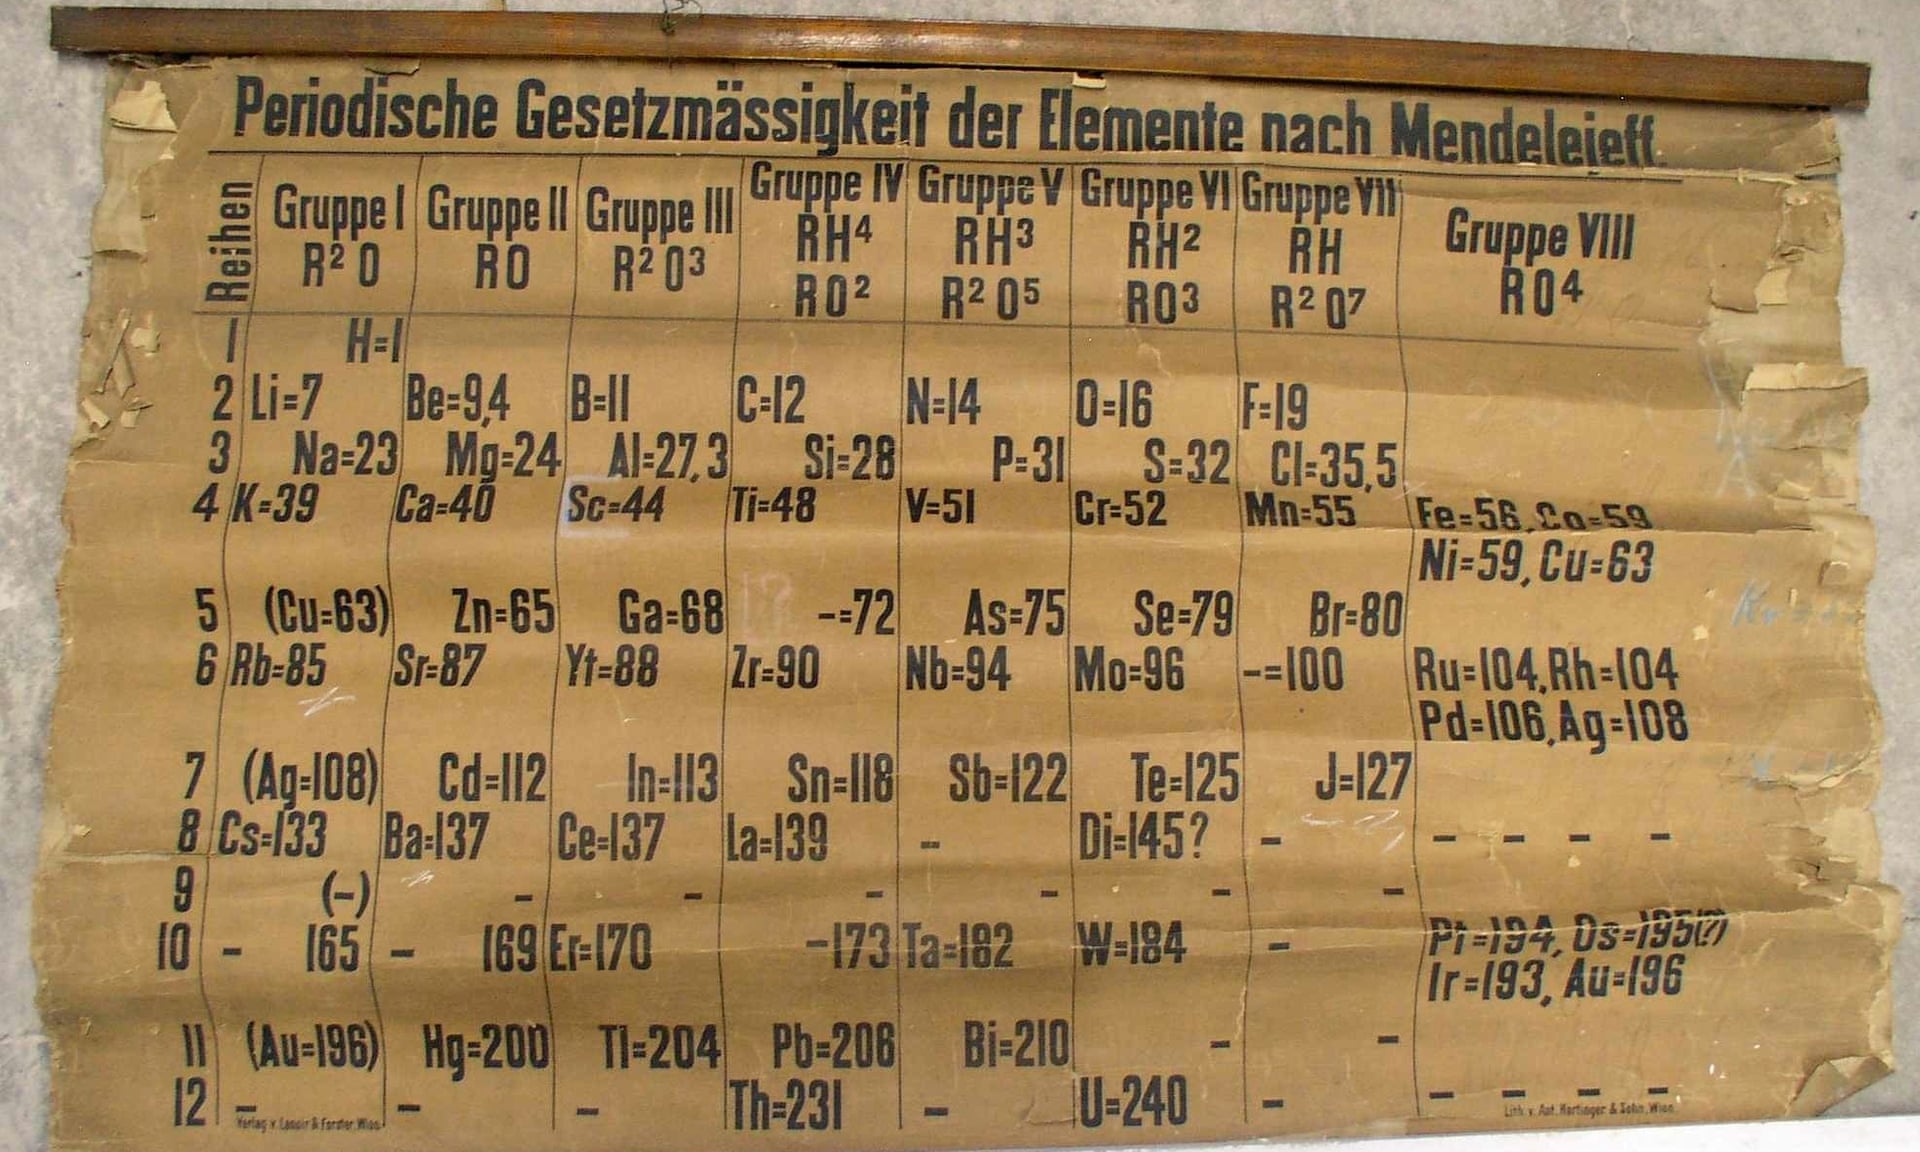 Lo scienziato trovato casualmente la versione più vecchia tavola periodica di Mendeleev